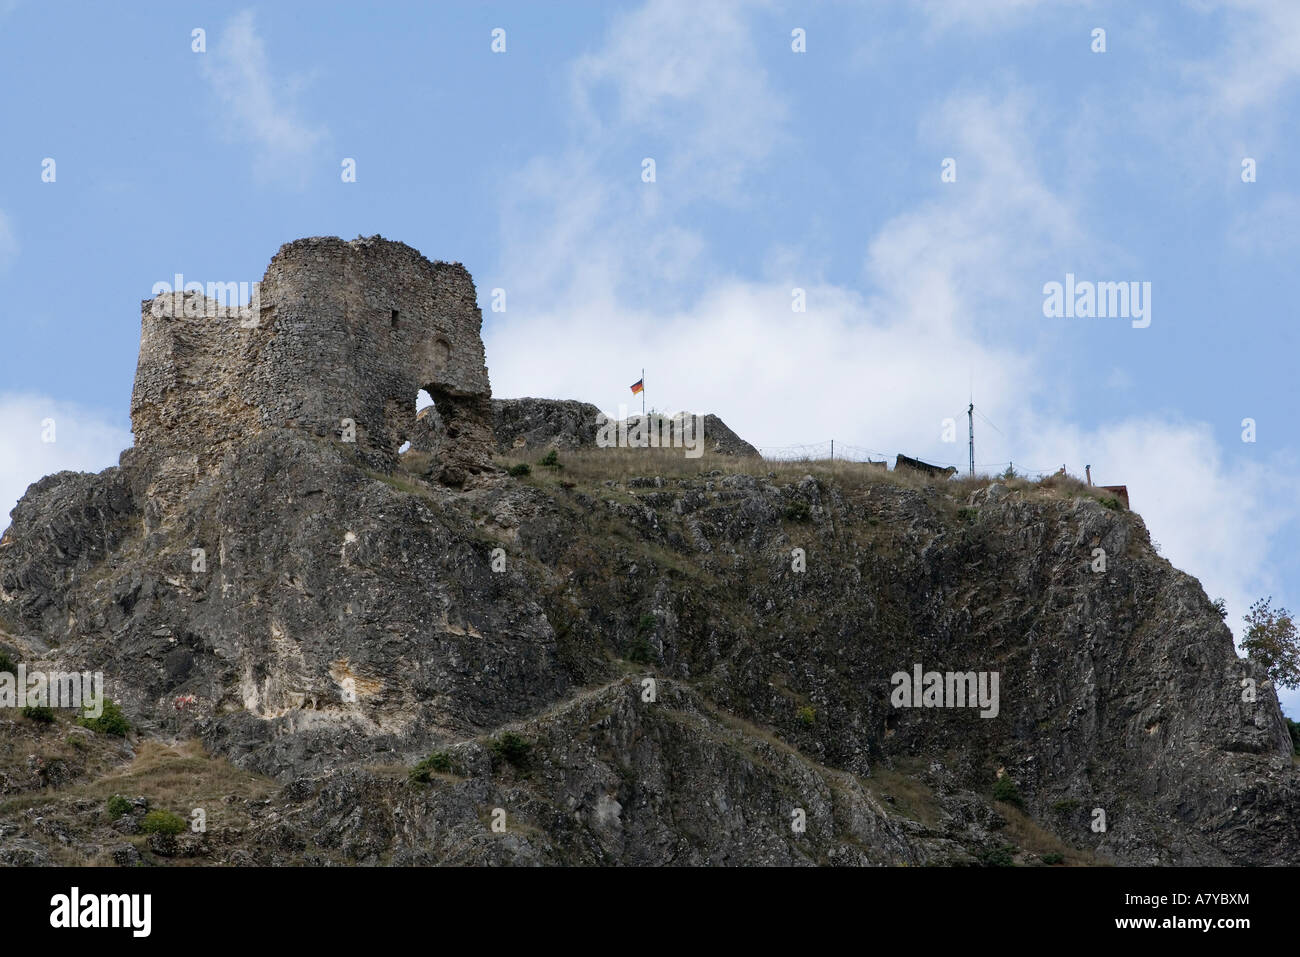 Hügel-Festung in der Nähe von Prizren. Unten sitzt heilige Erzengel-Kloster, zerstört und brannte im März 2004 Pogrom von Albanern. Stockfoto